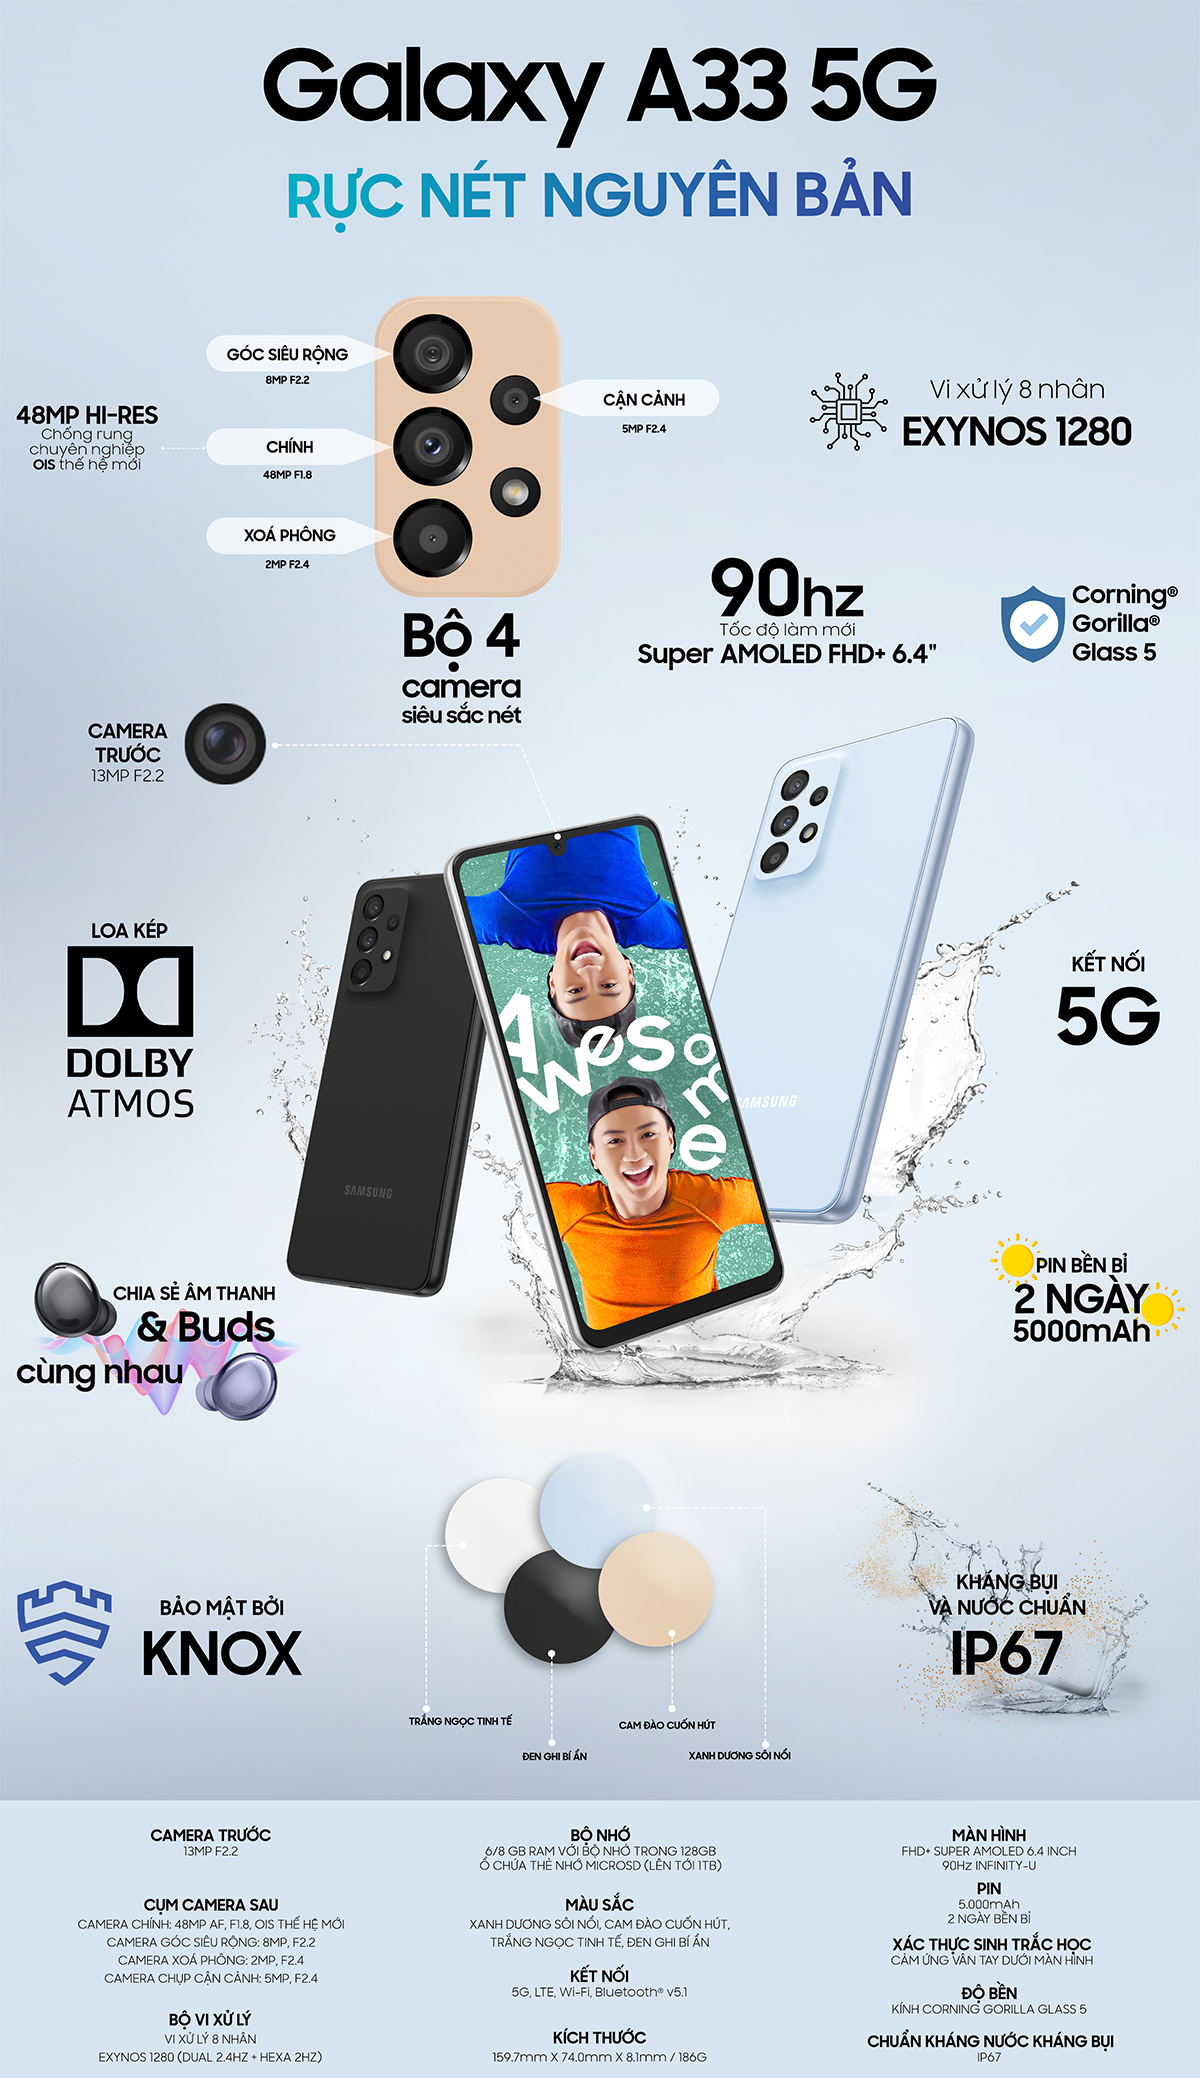 Galaxy A33 5G với những tính năng thu hút người dùng - 1